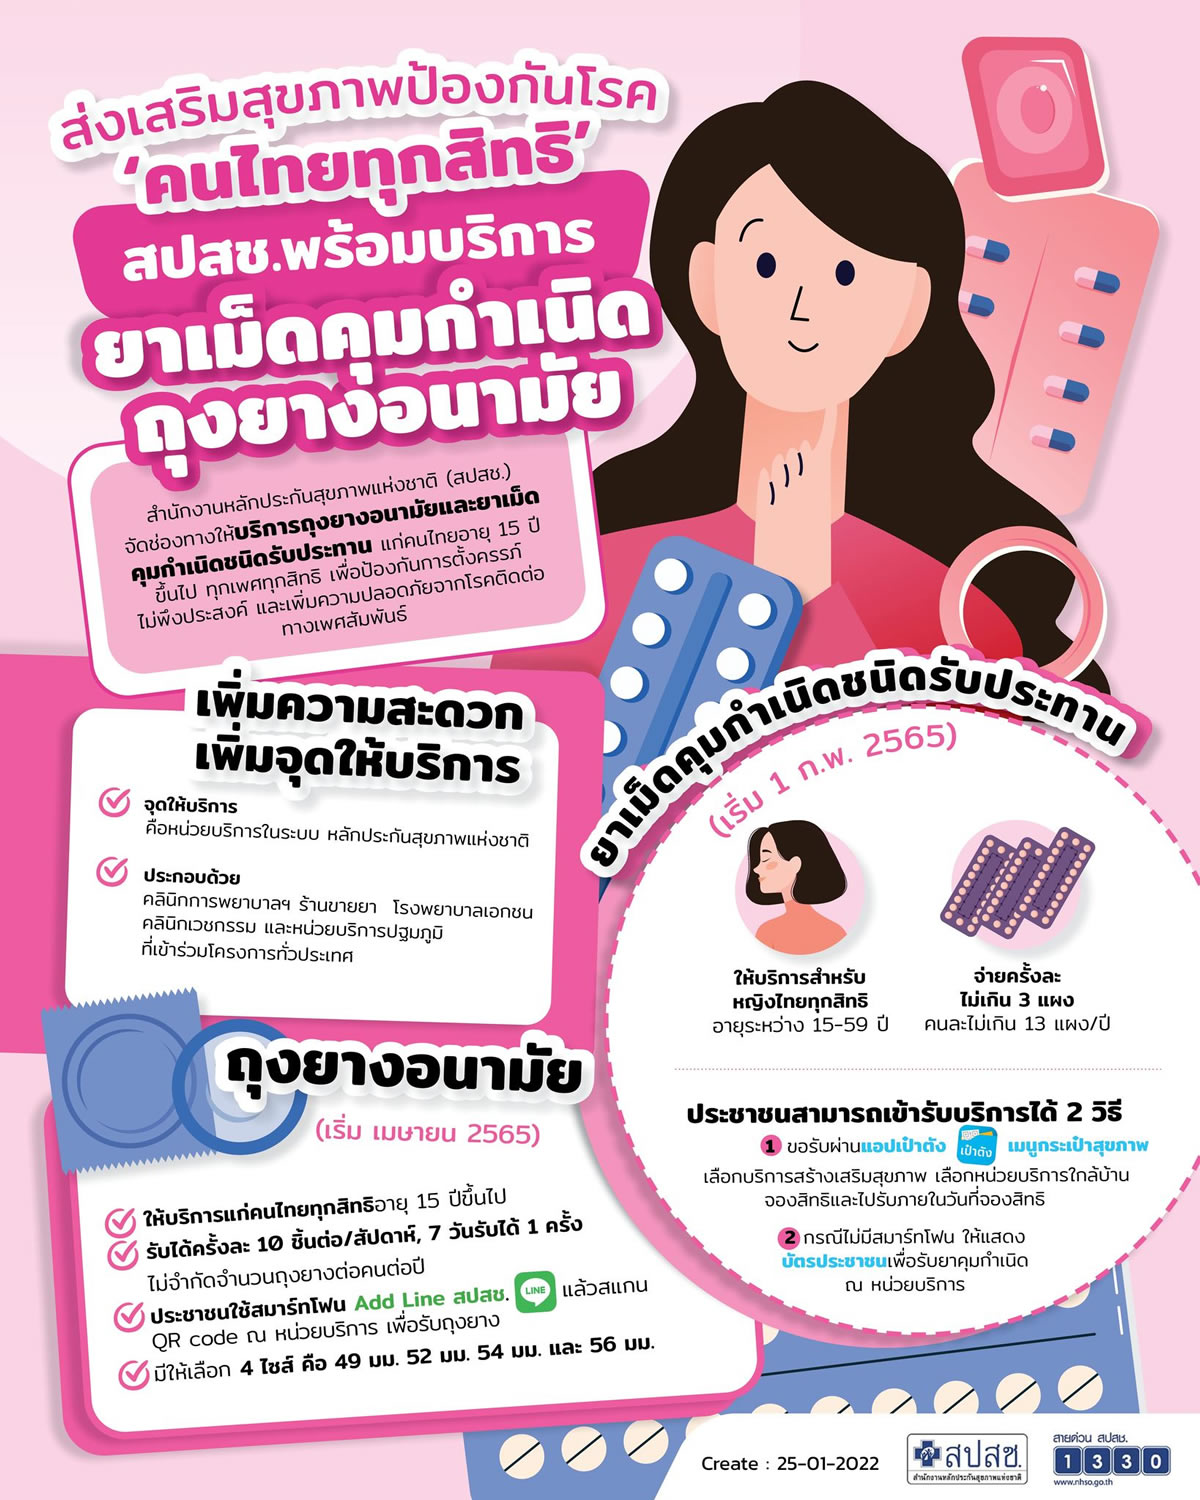 15歳以上のタイ人に経口避妊薬とコンドームを無料配布へ